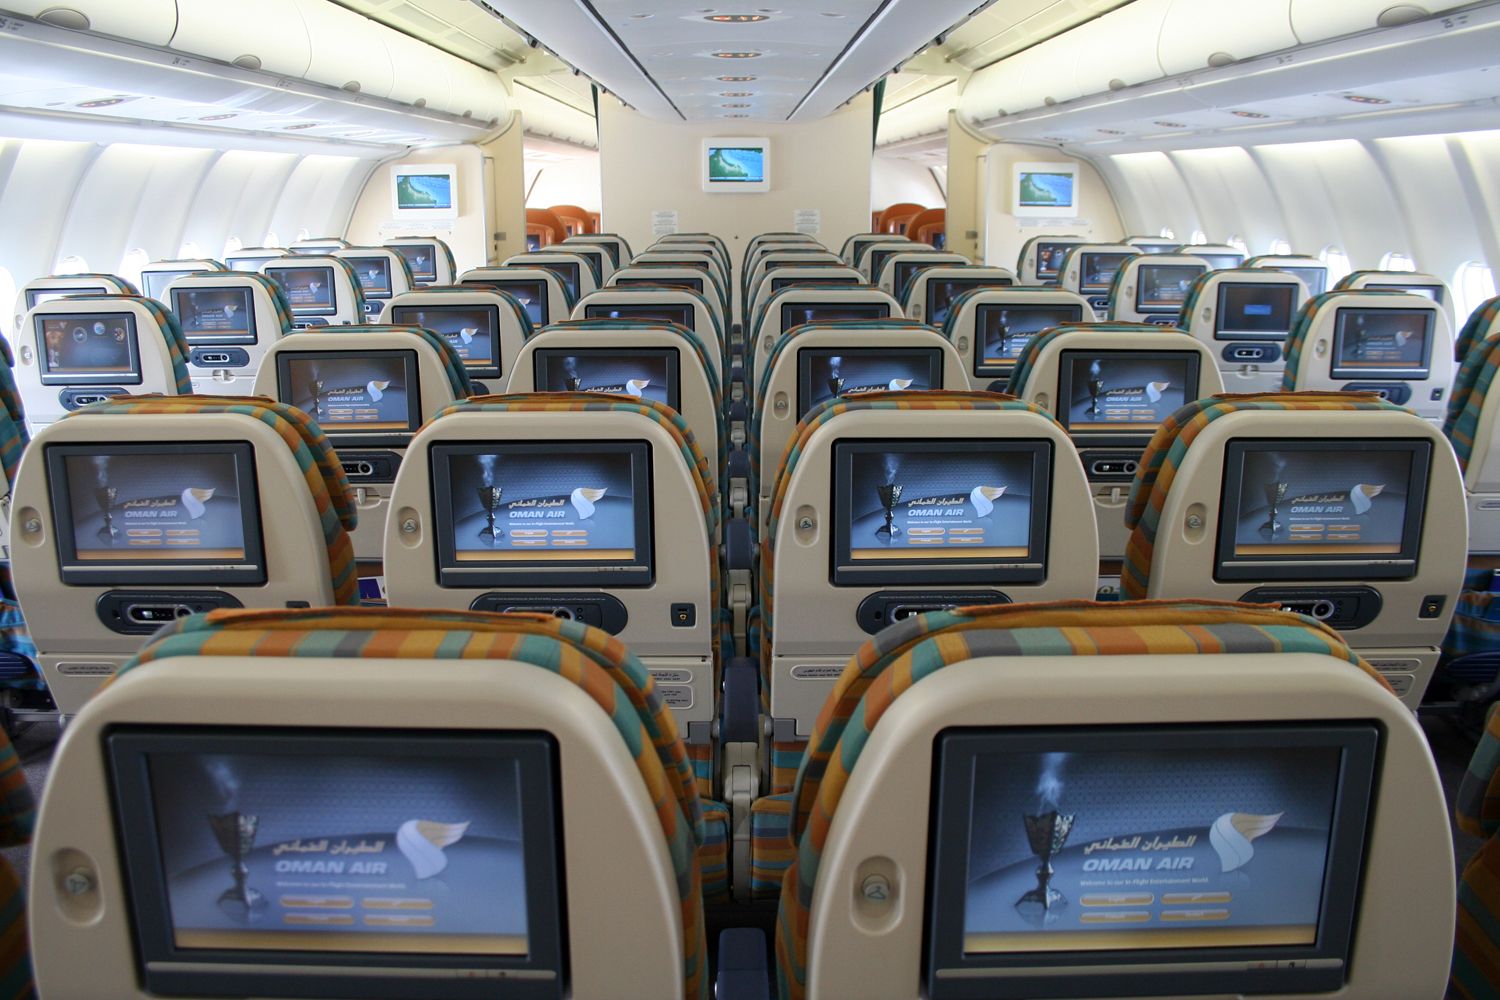 Les films dans les avions pourraient être payants en classe éco dès 2016